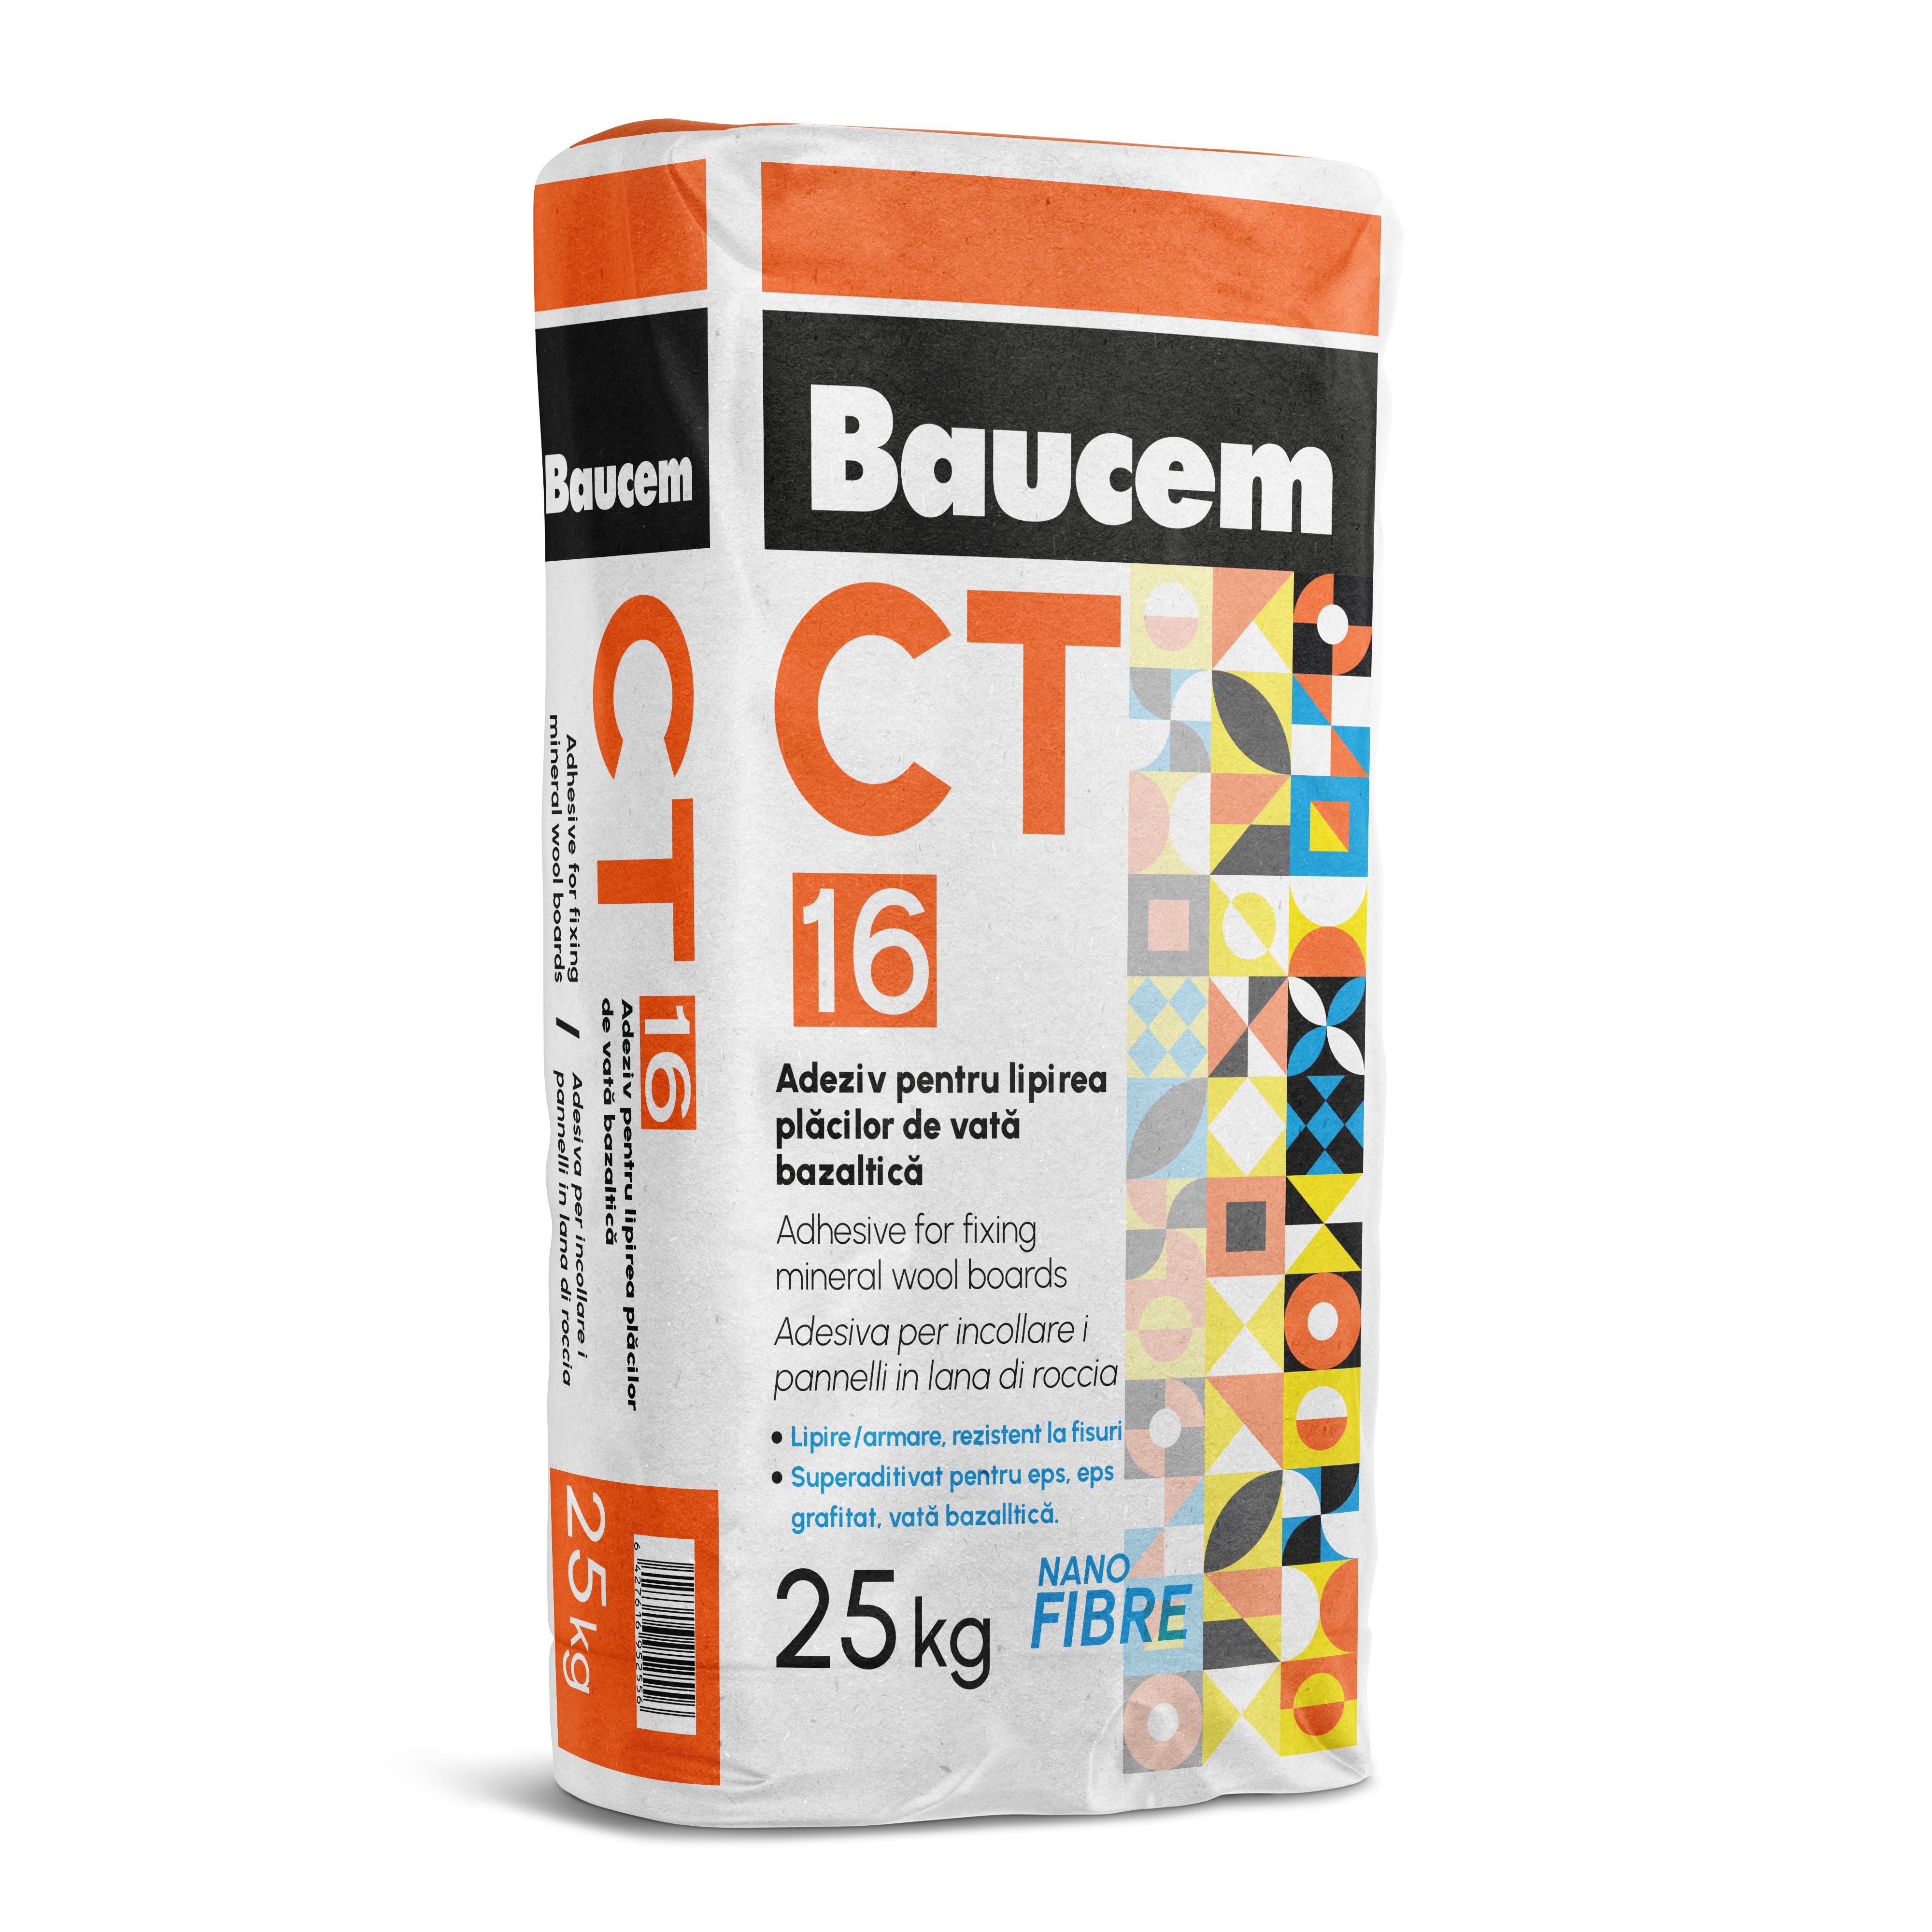 Vata fatada Baucem 0,035 conductivitate termica- Promotie -